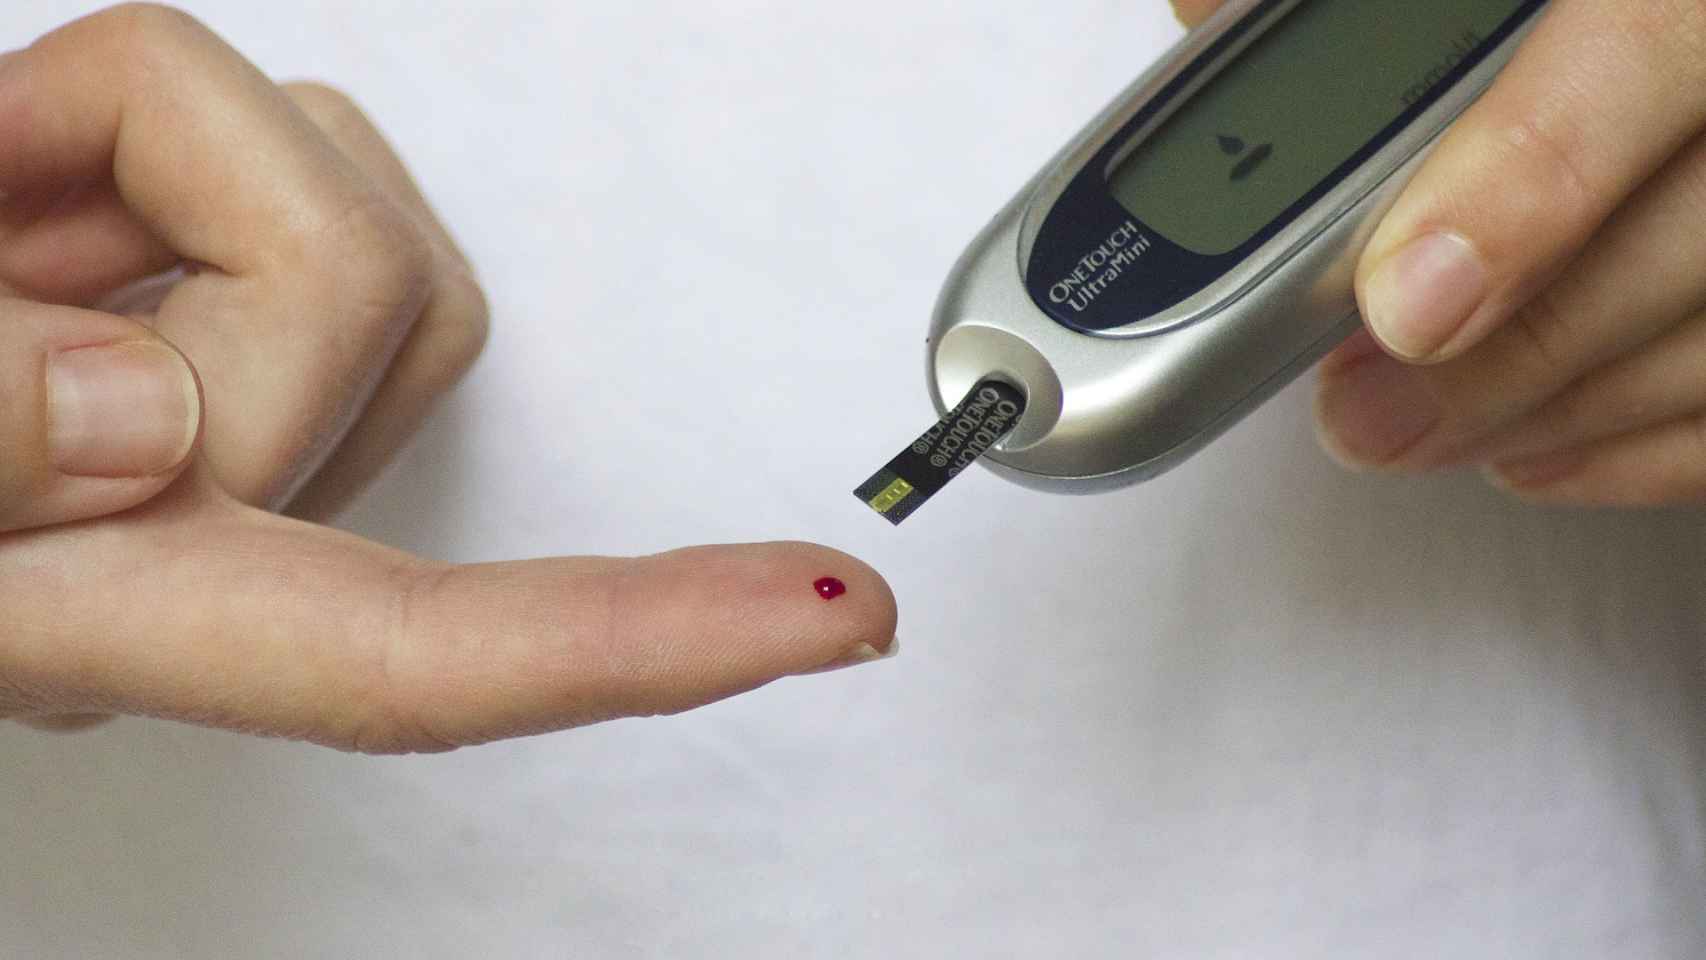 Calamidad palma Leve Lo nuevo de Samsung para los diabéticos mide el nivel de glucosa sin  pinchazos